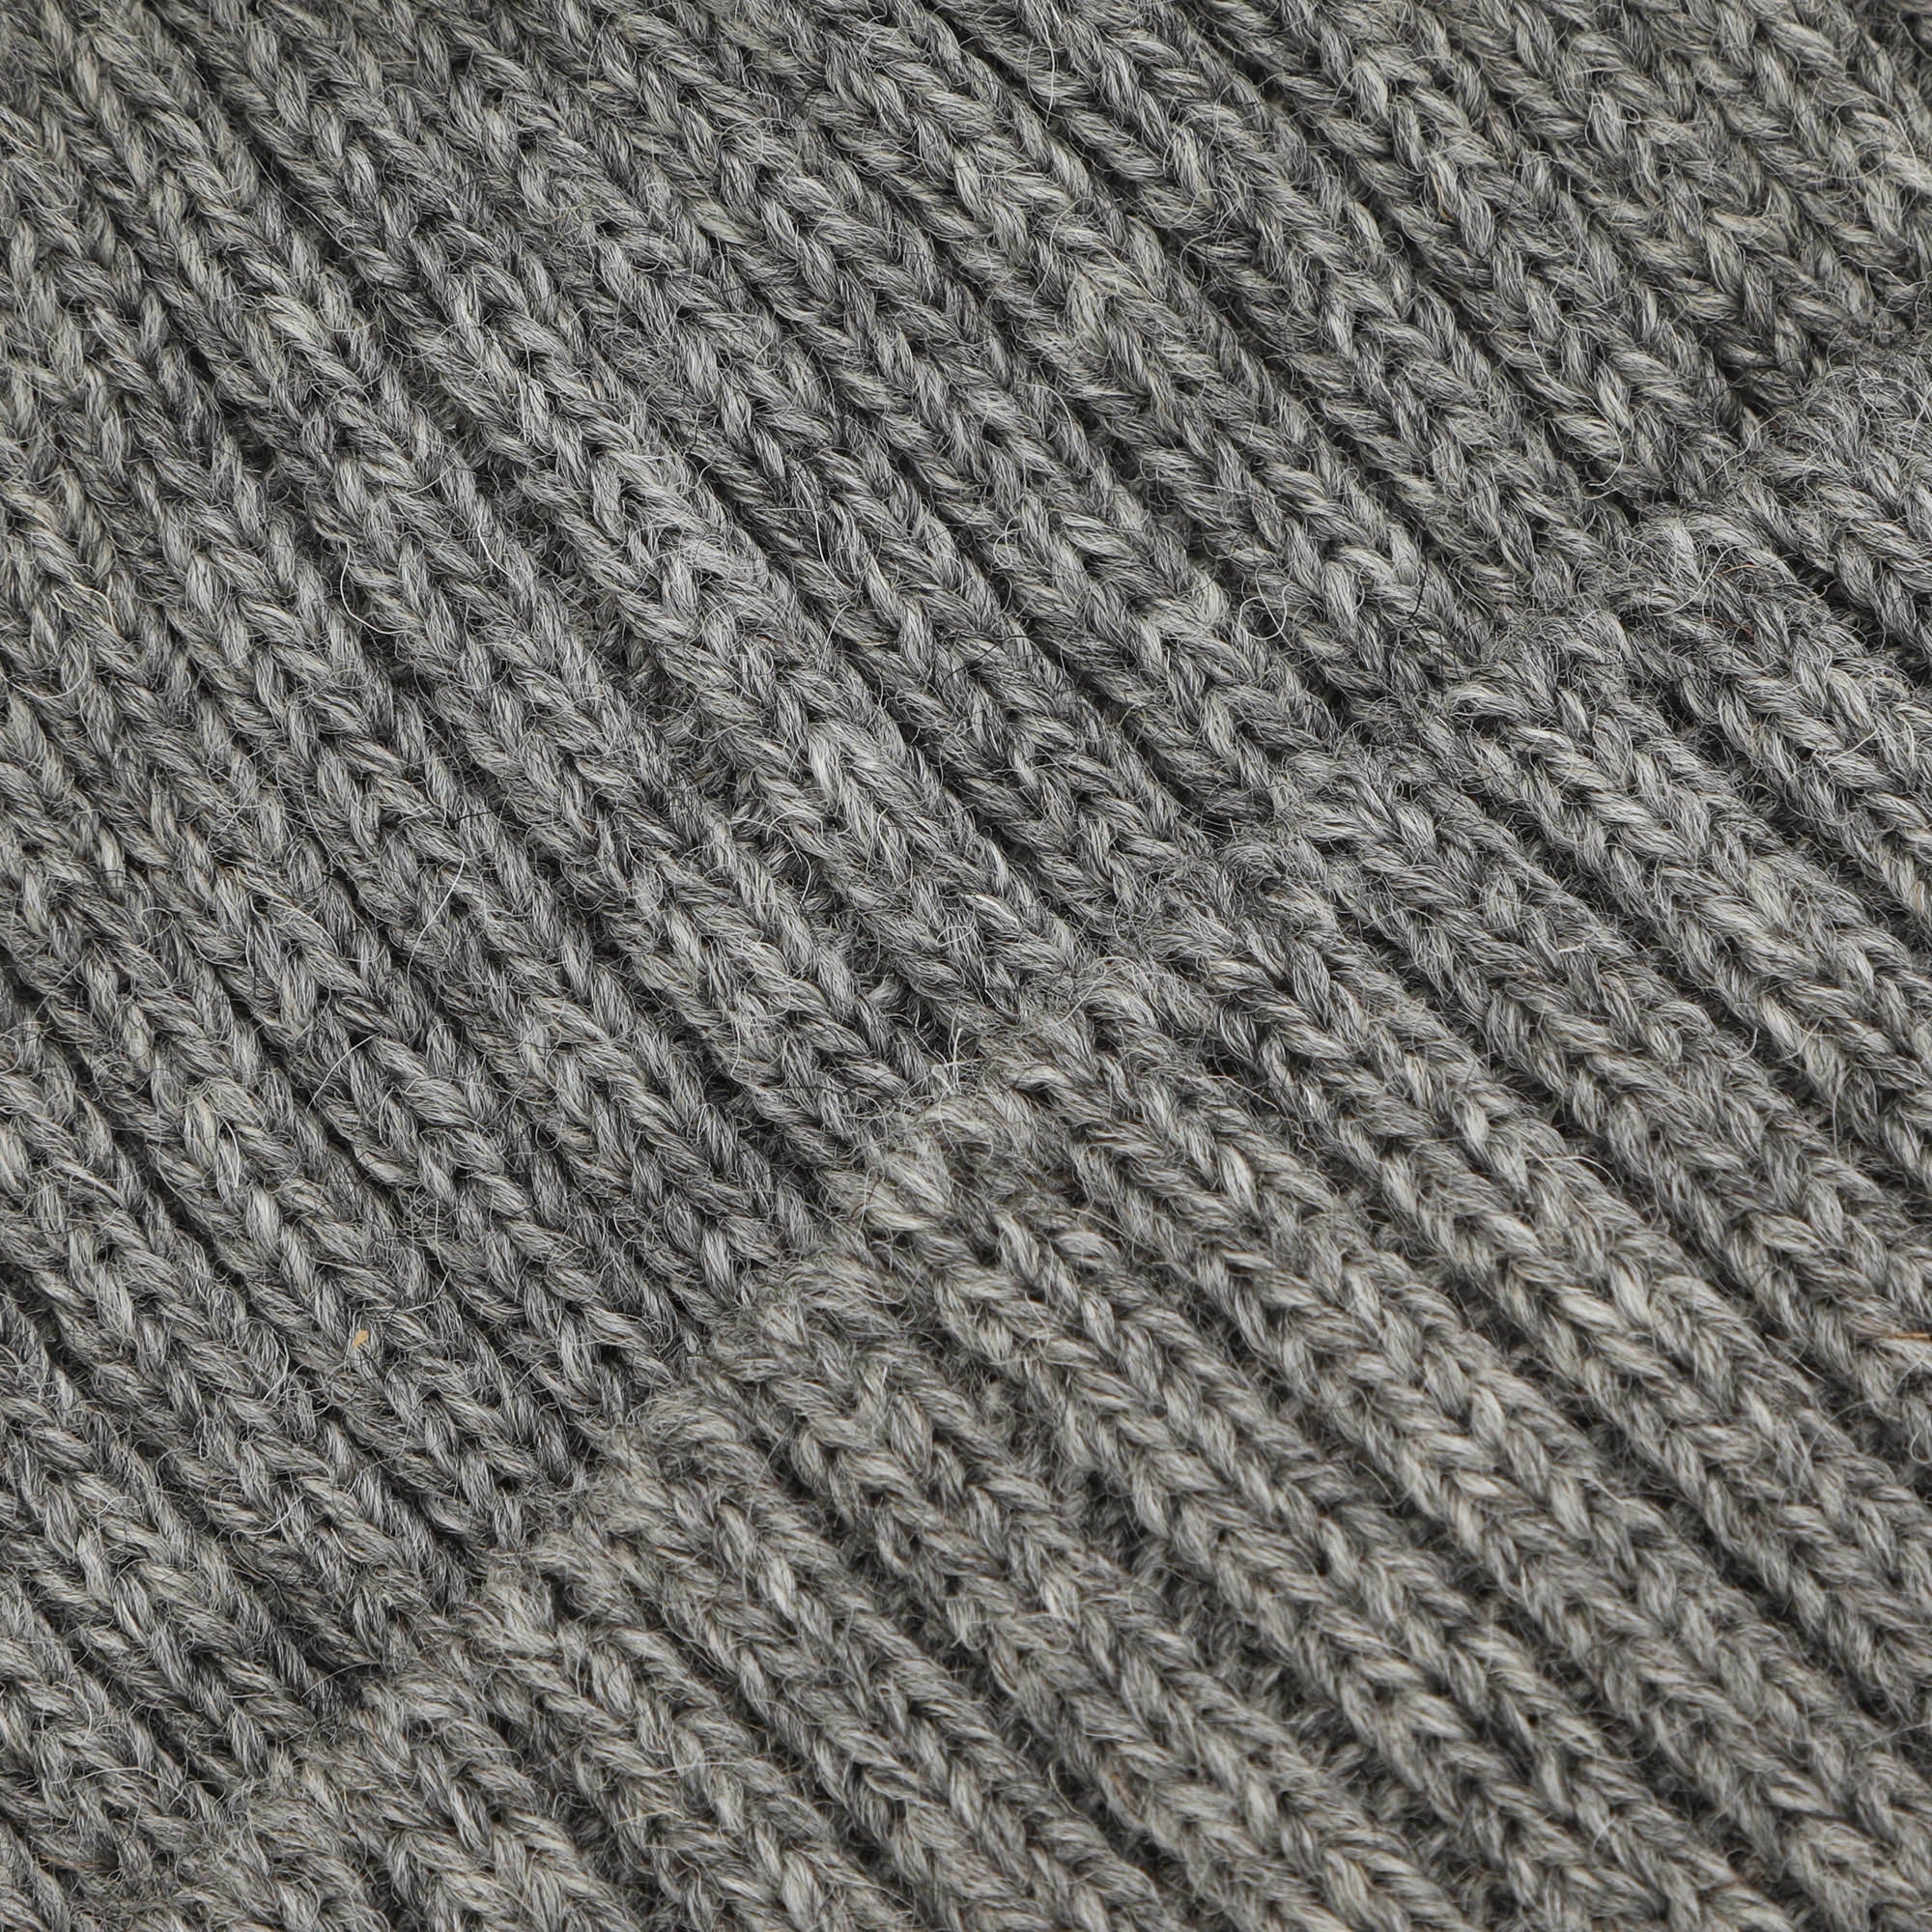 2x1 Watchcap Wool - Dark Grey